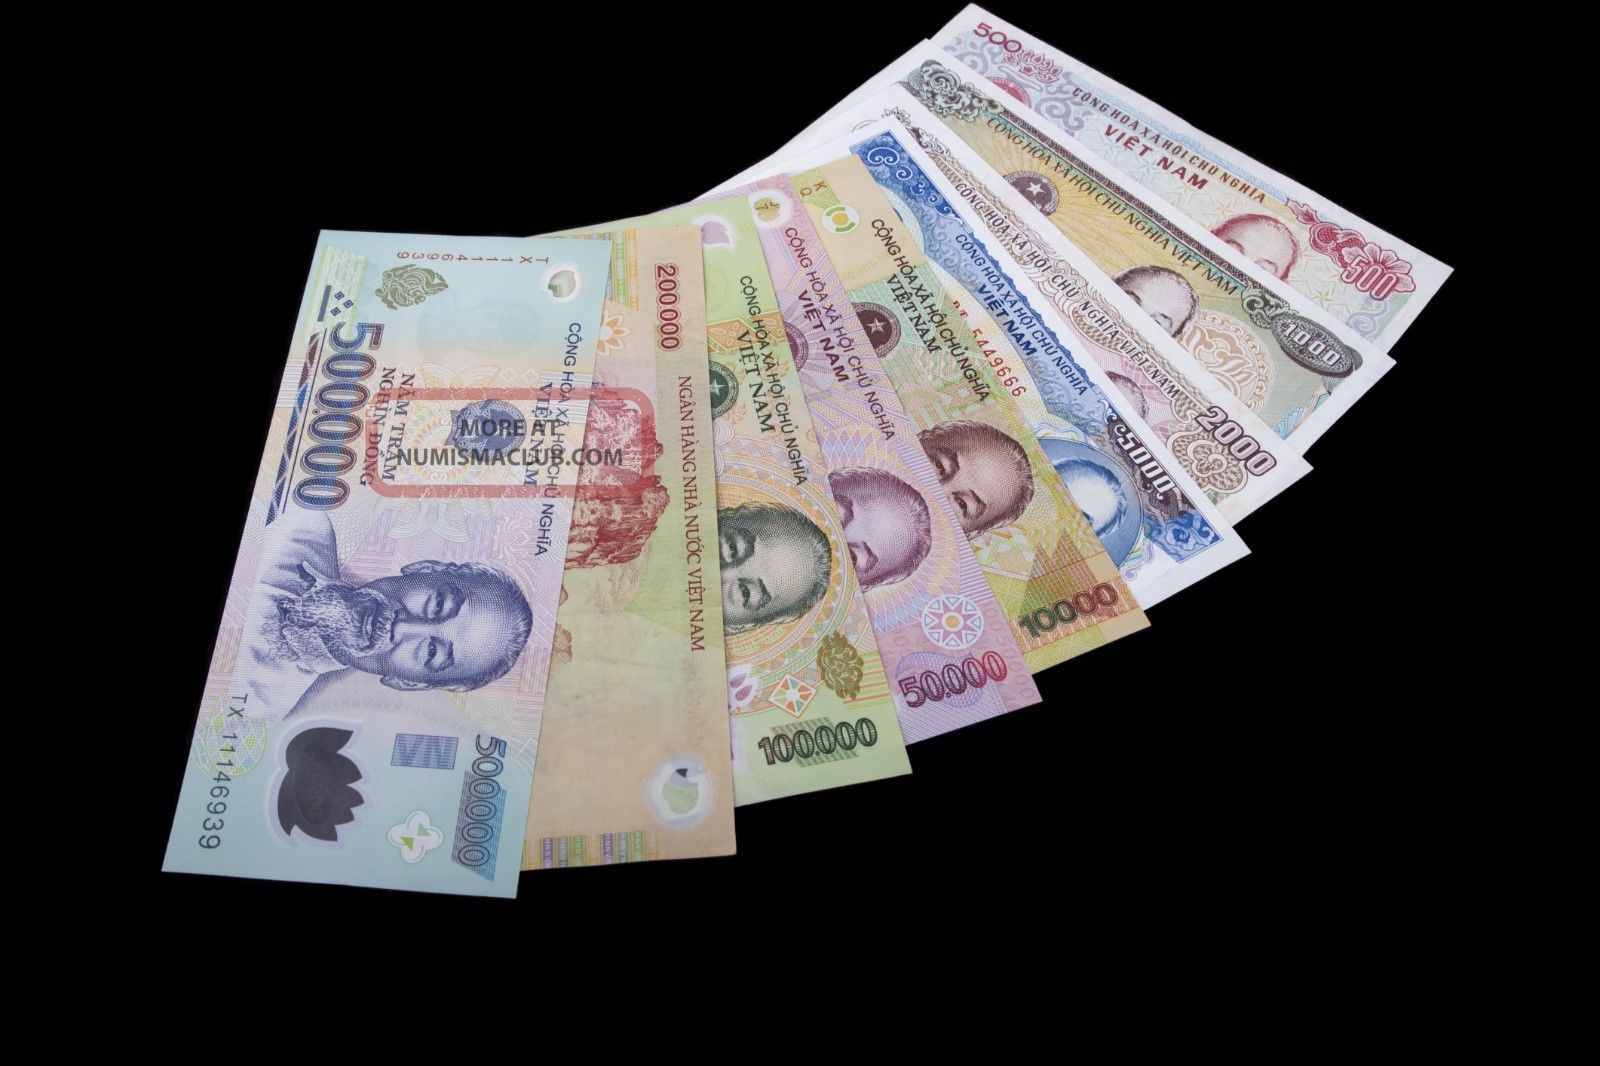 вьетнам валюта